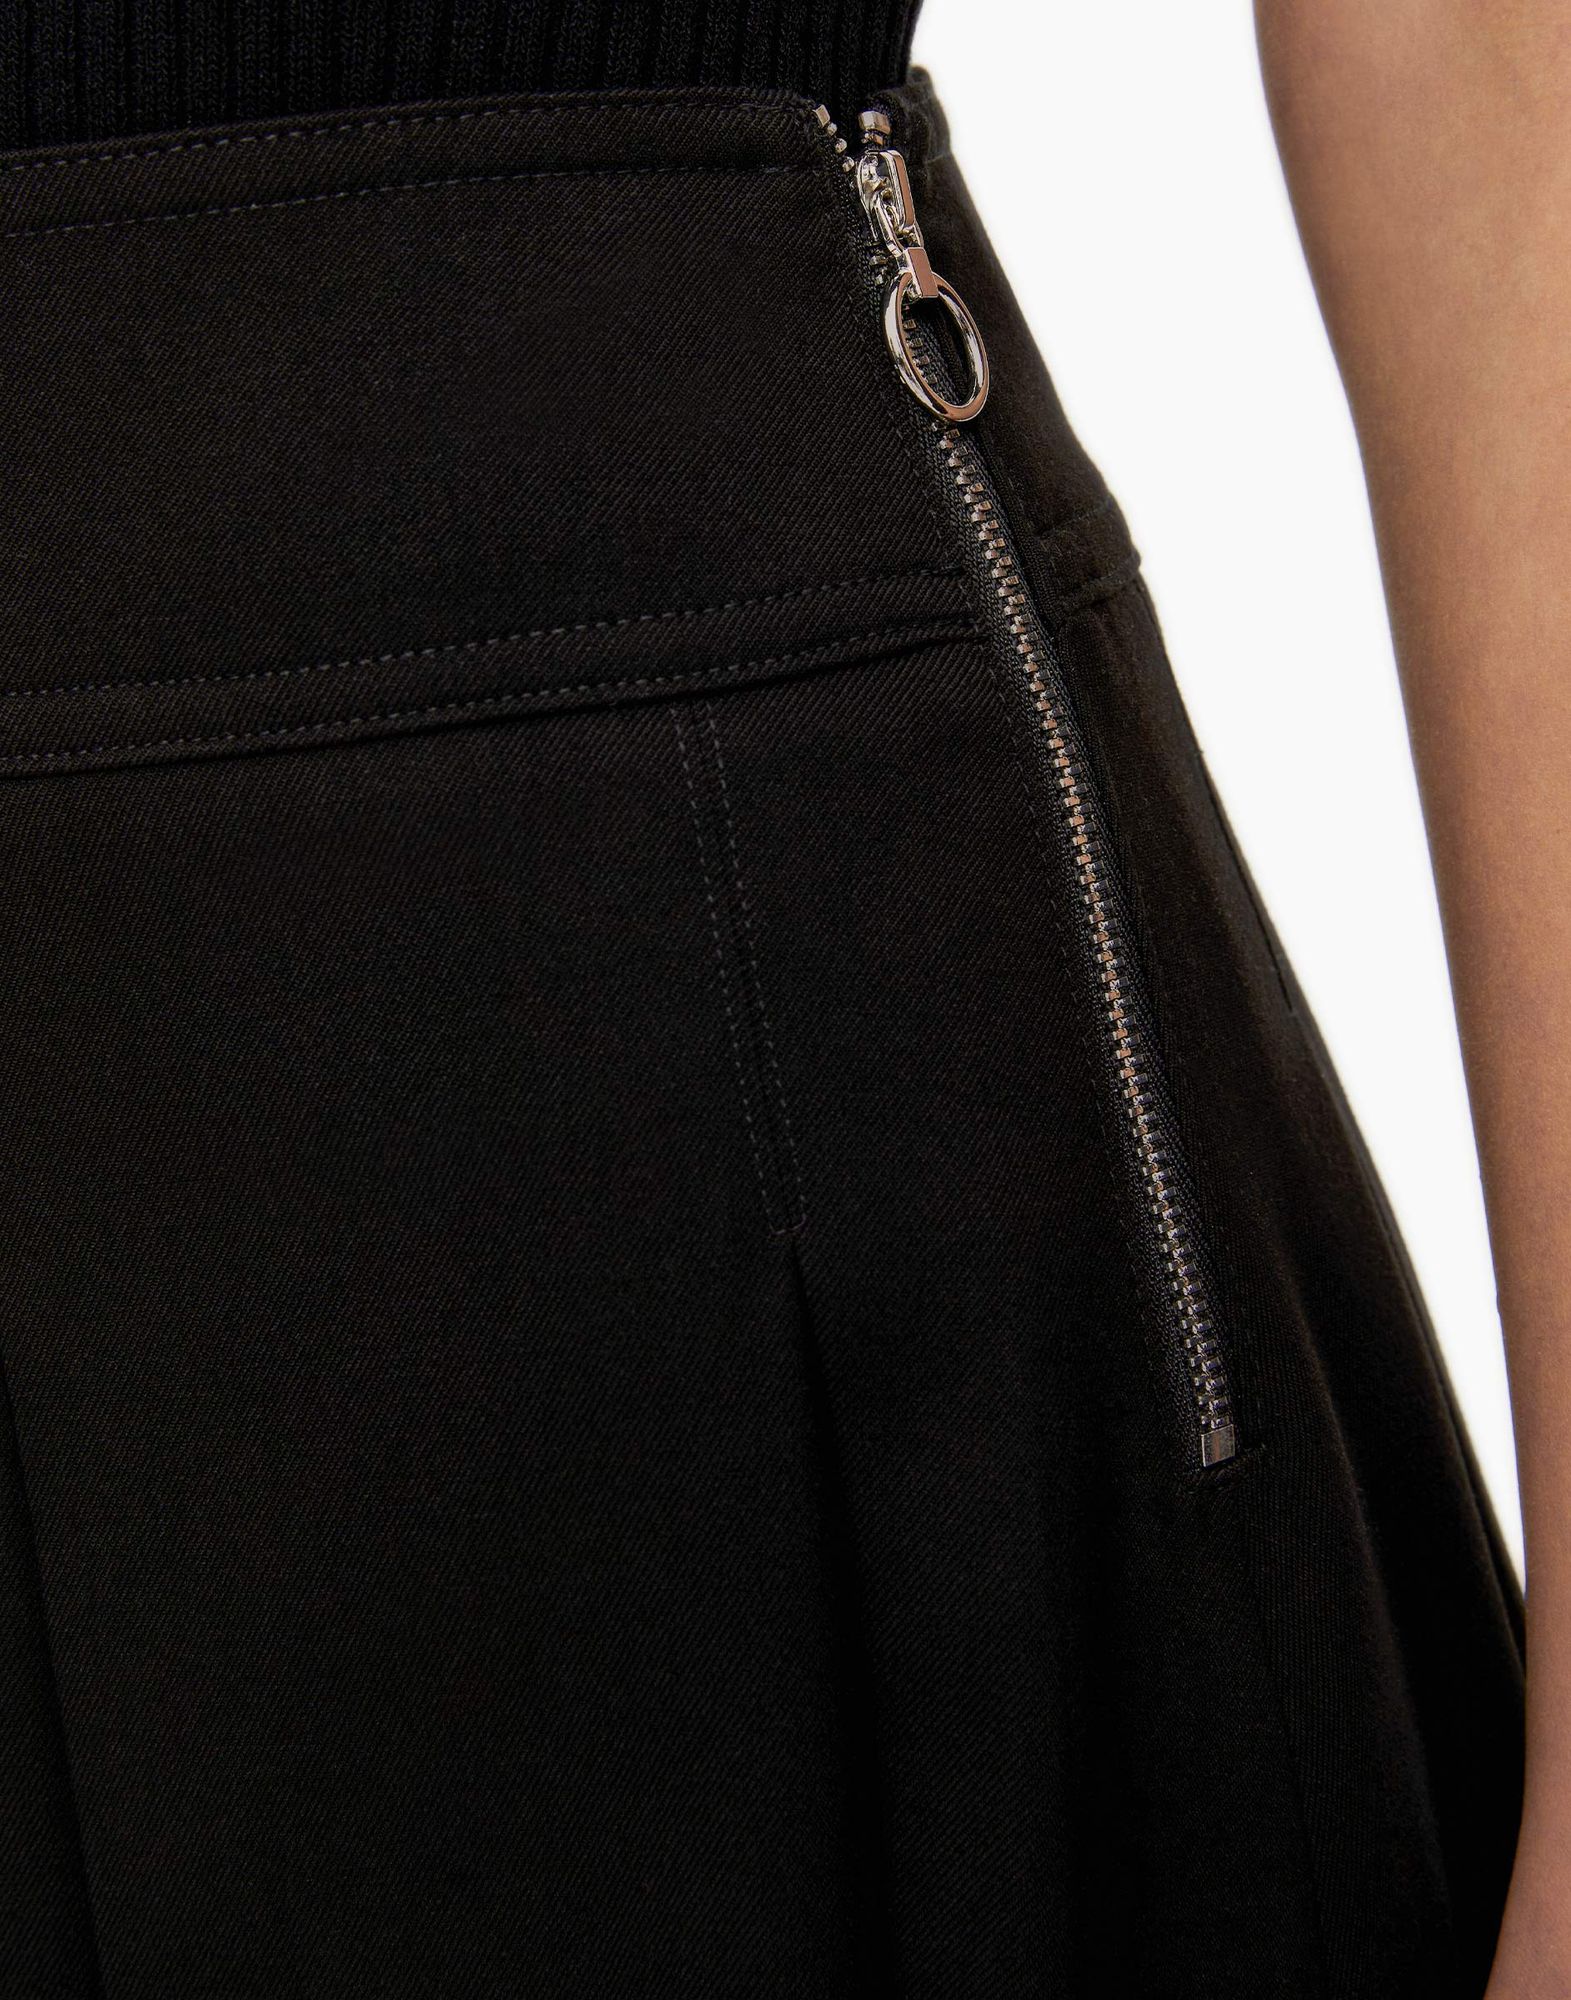 Чёрная юбка со складками-3